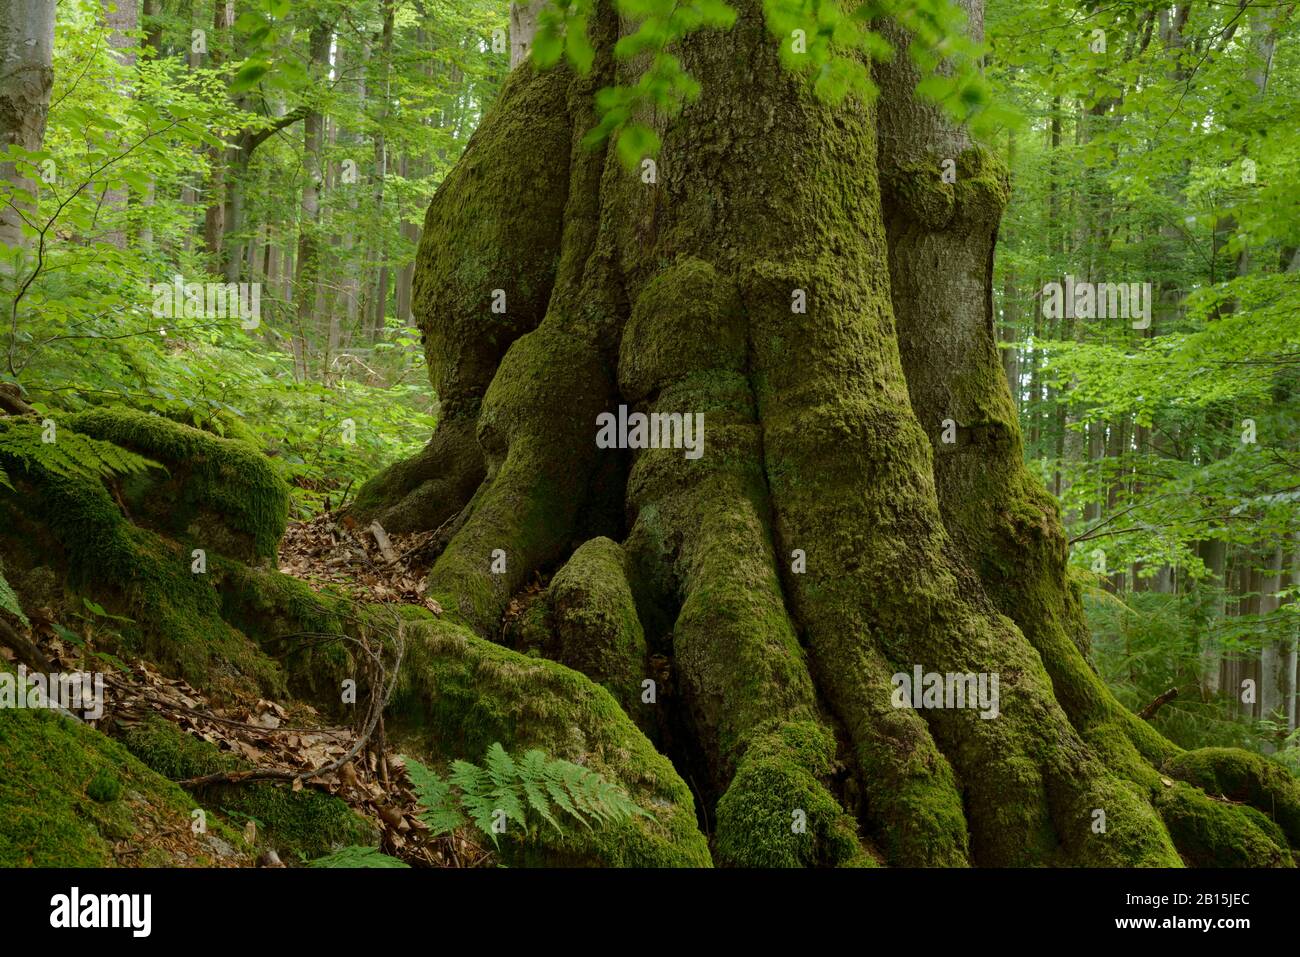 Böhmen/Tschechien: Methuselah-buchen in einem der ältesten Primärwaldreservate Europas - "Hojna Voda" - in der Nähe der österreichischen Grenze. Stockfoto